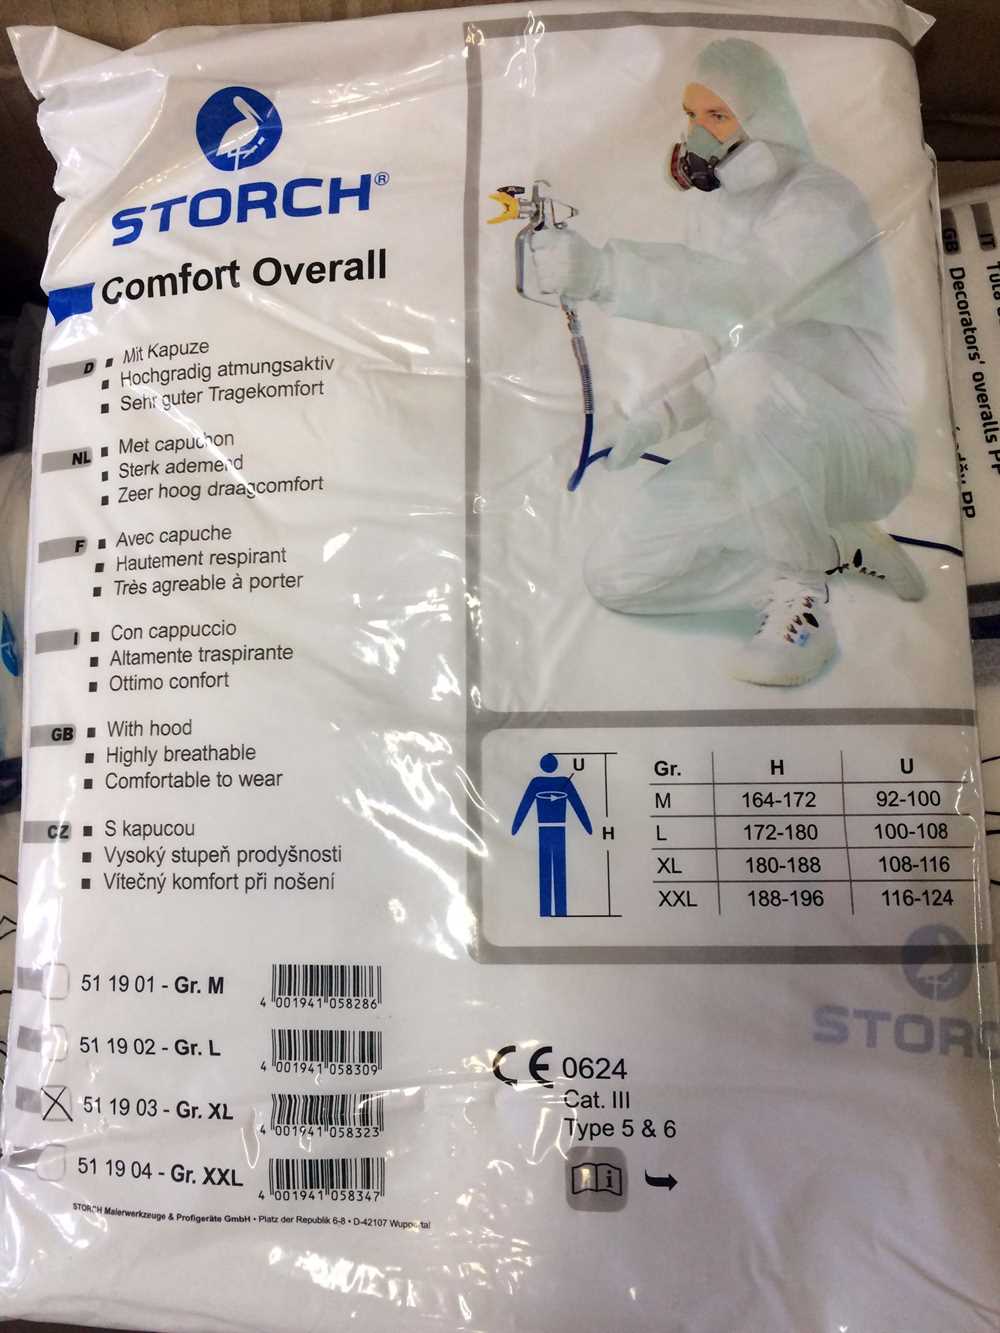 Купить Комбинезон малярный Comfort Storch XXL, защитный, полипропилен недорого